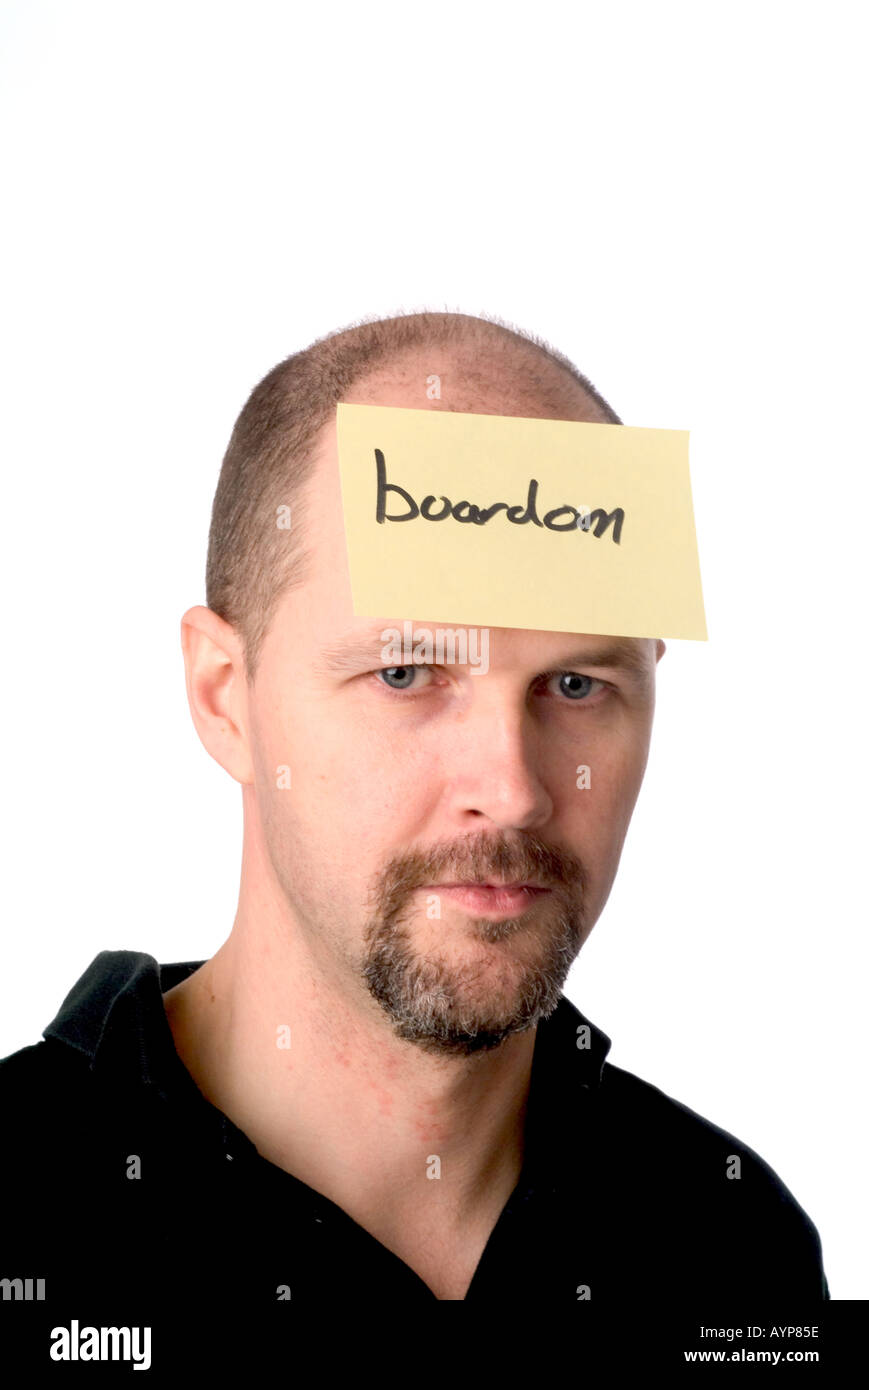 Homme avec un post-it sur sa tête représentant qu'il s'ennuie plate laborieux ennui réunion expression faciale Banque D'Images